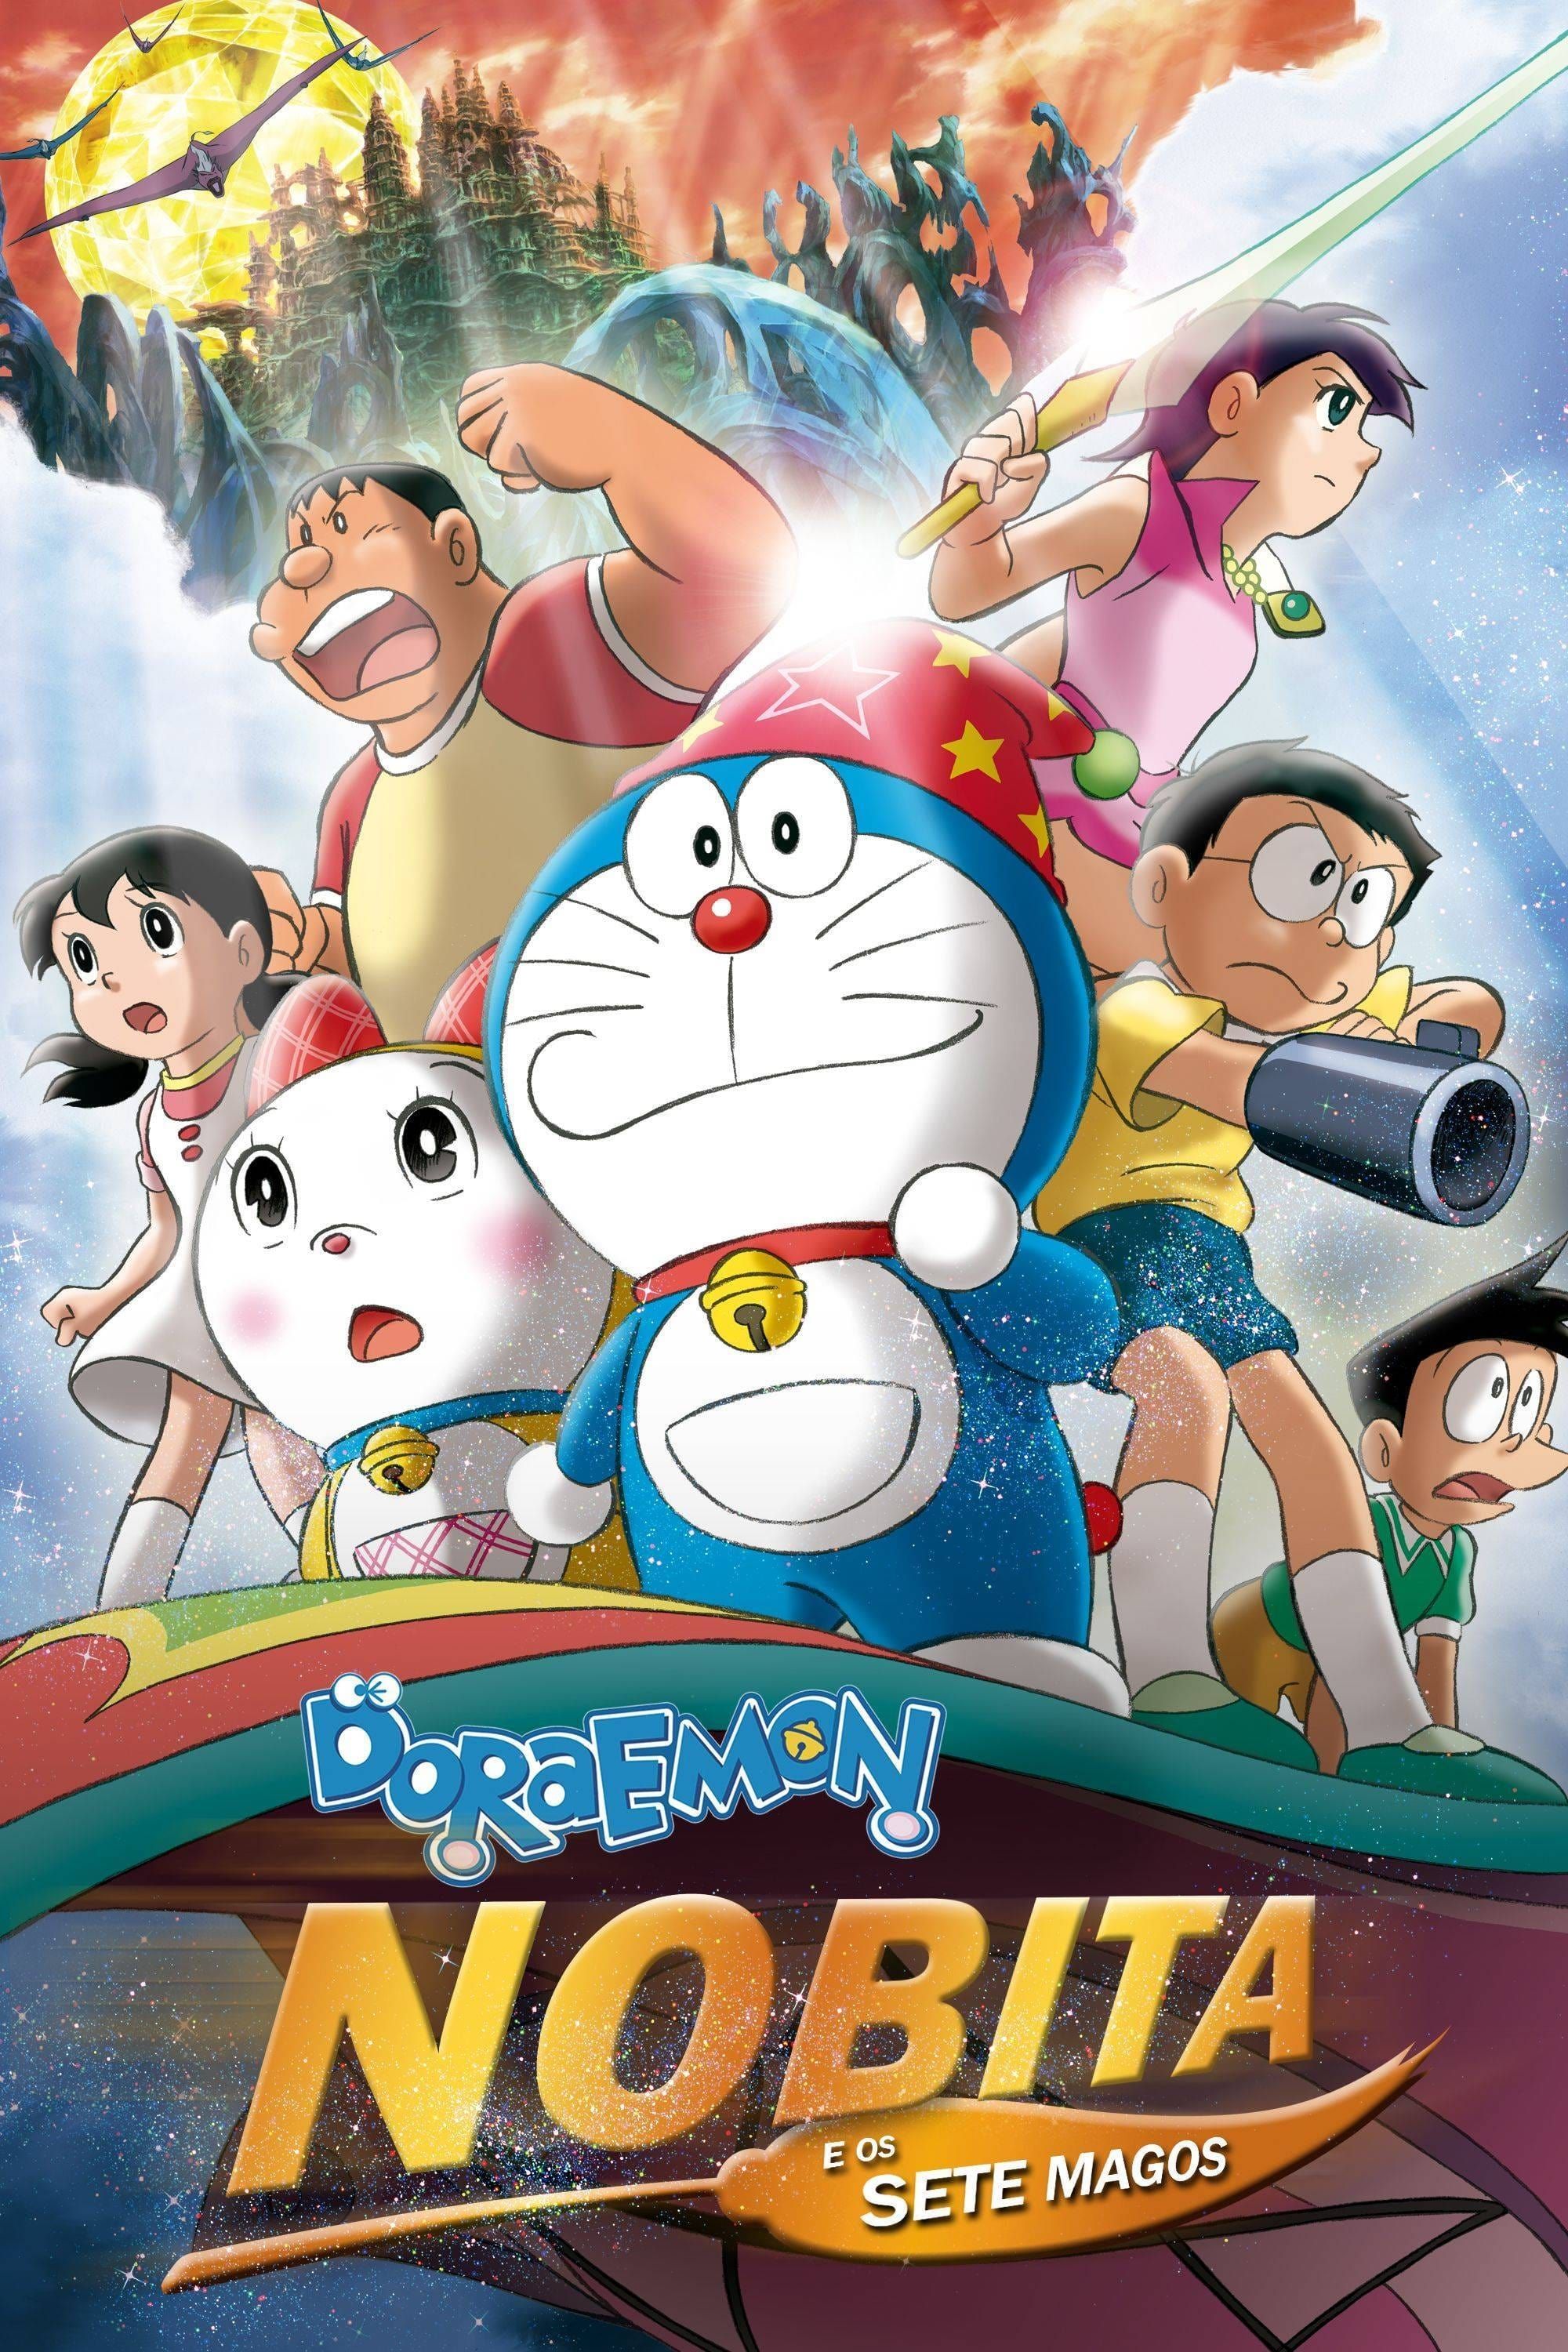 Doraemon Movie 27: Nobita no Shin Makai Daibouken - 7-nin no Mahoutsukai